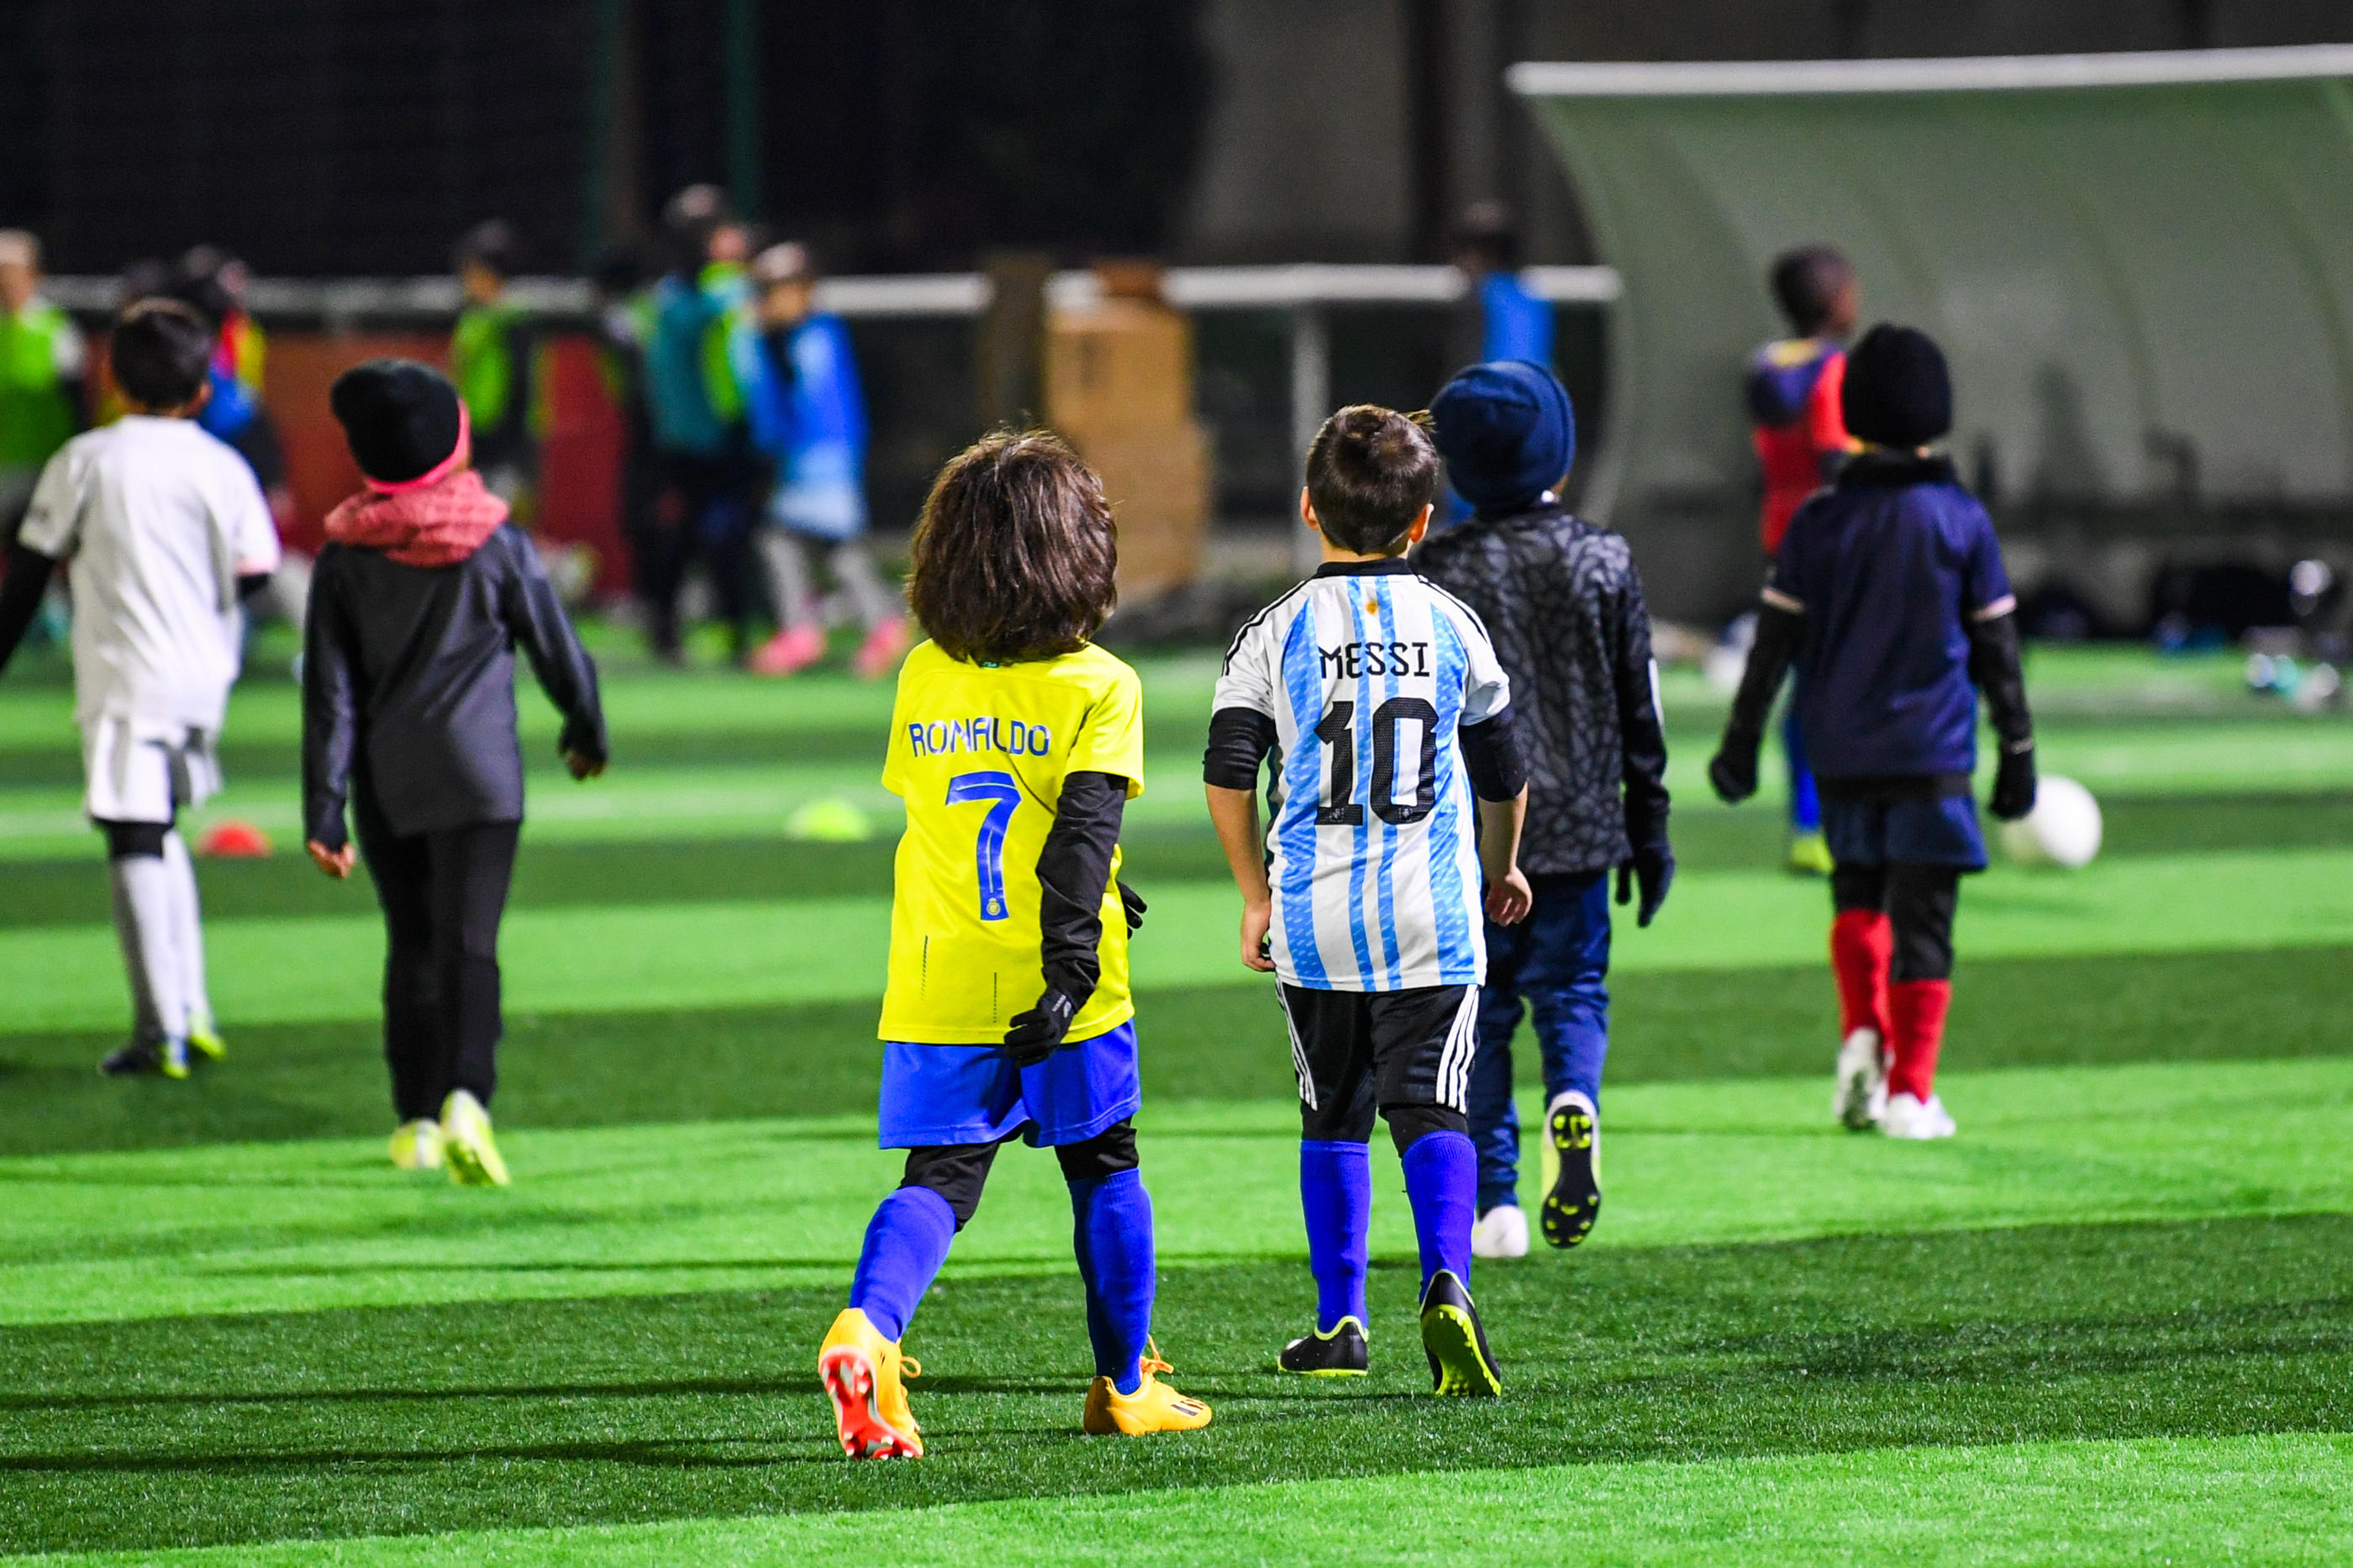 Des cours de foot jusqu'à 50 euros pour des enfants : l'intrigant